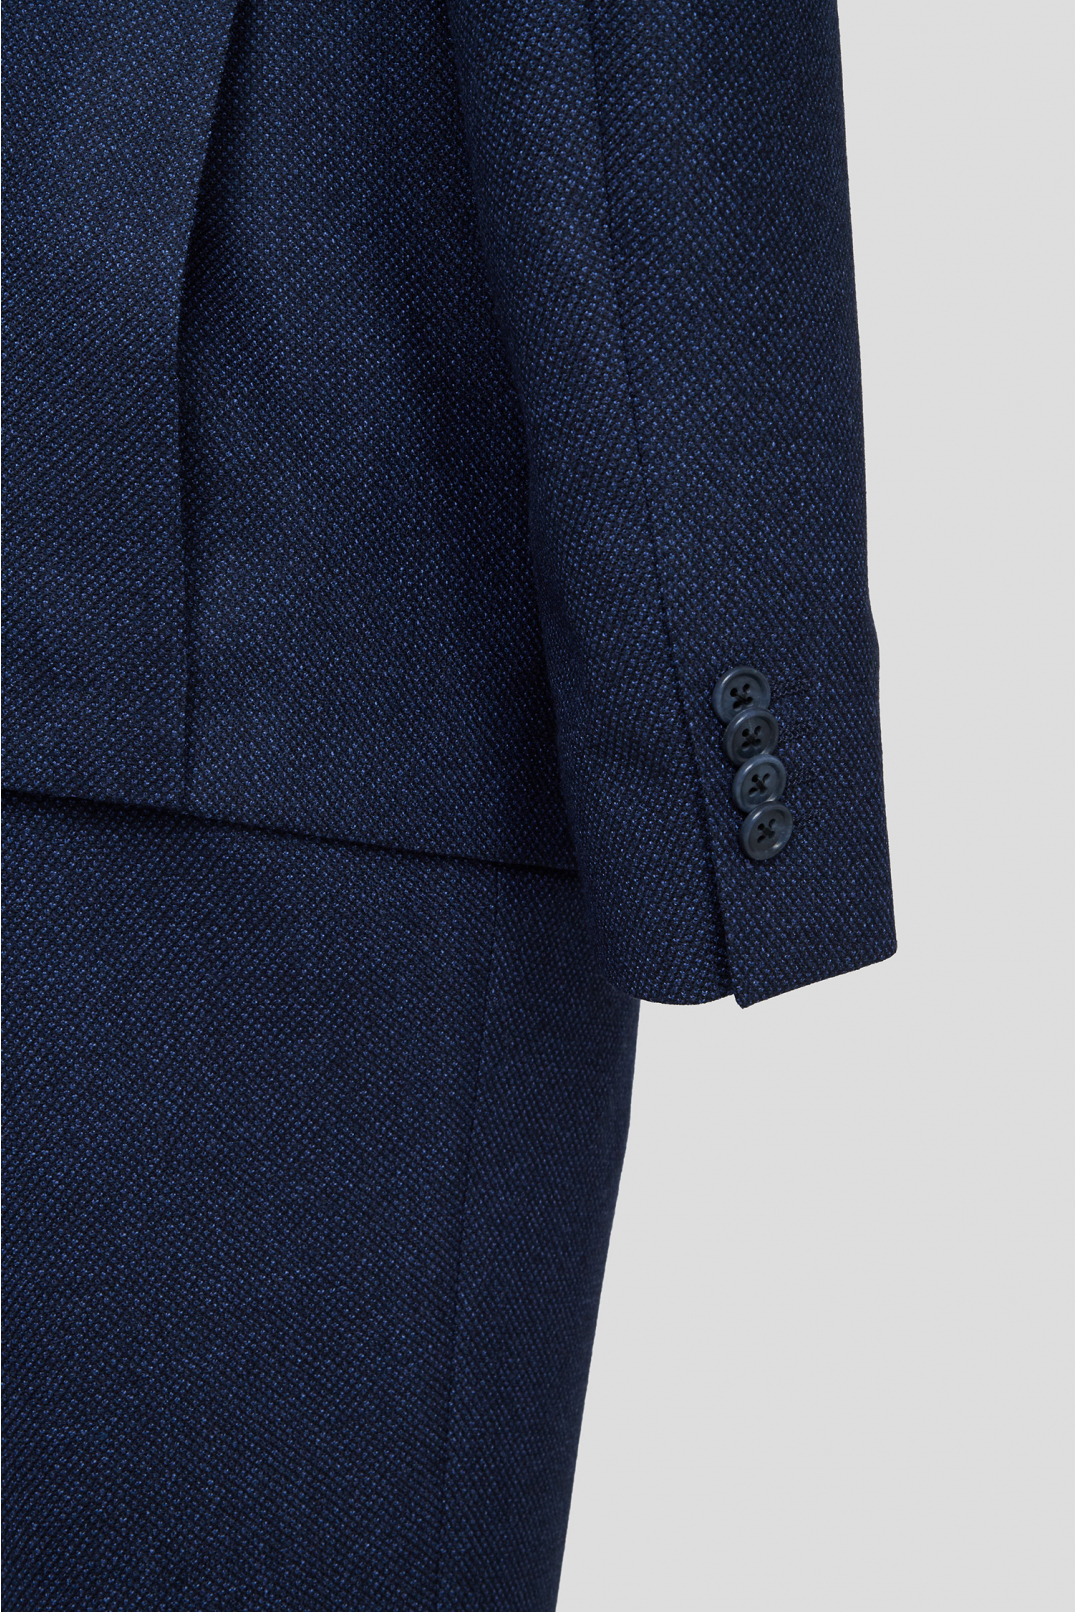 Чоловічий темно-синій вовняний костюм з візерунком (піджак, брюки) - 4